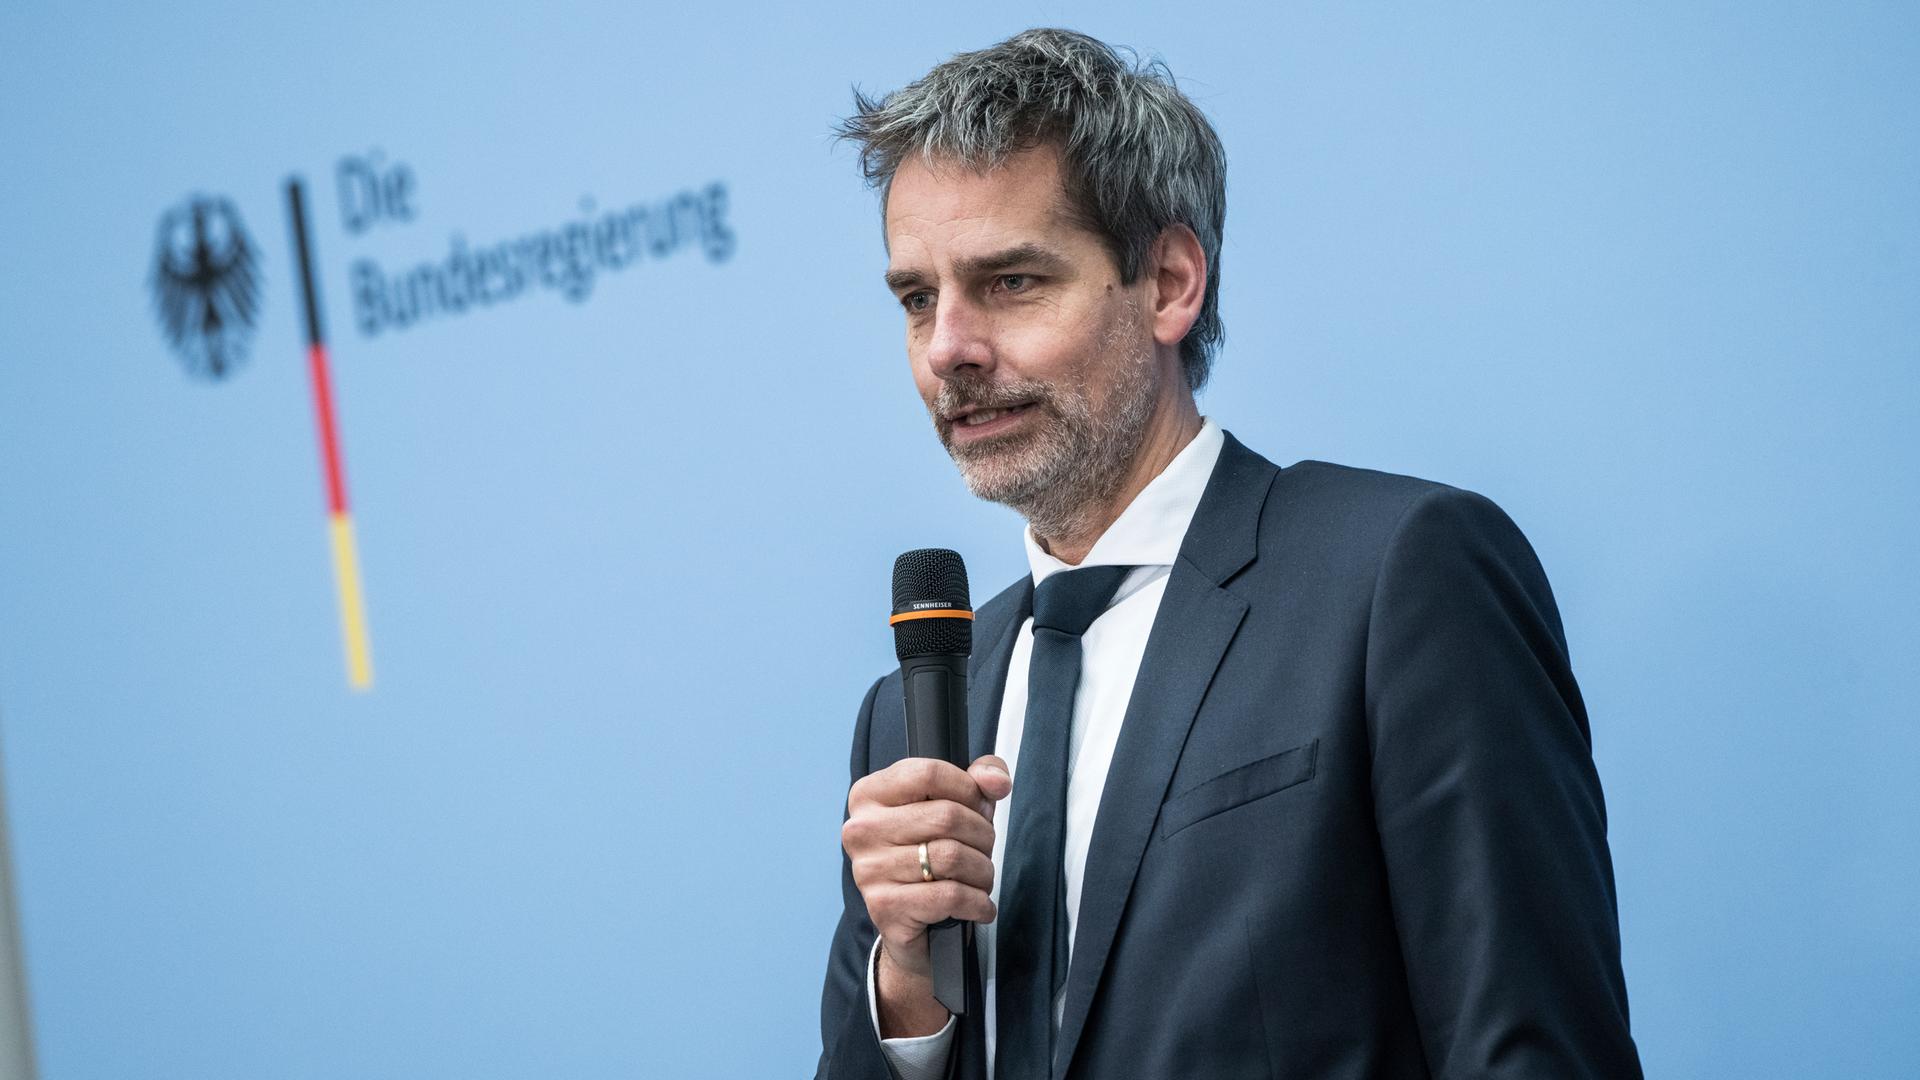 Regierungssprecher Steffen Hebestreit spricht in ein Mikrofon, hinter ihm ist ein Logo der Bundesregierung zu sehen.